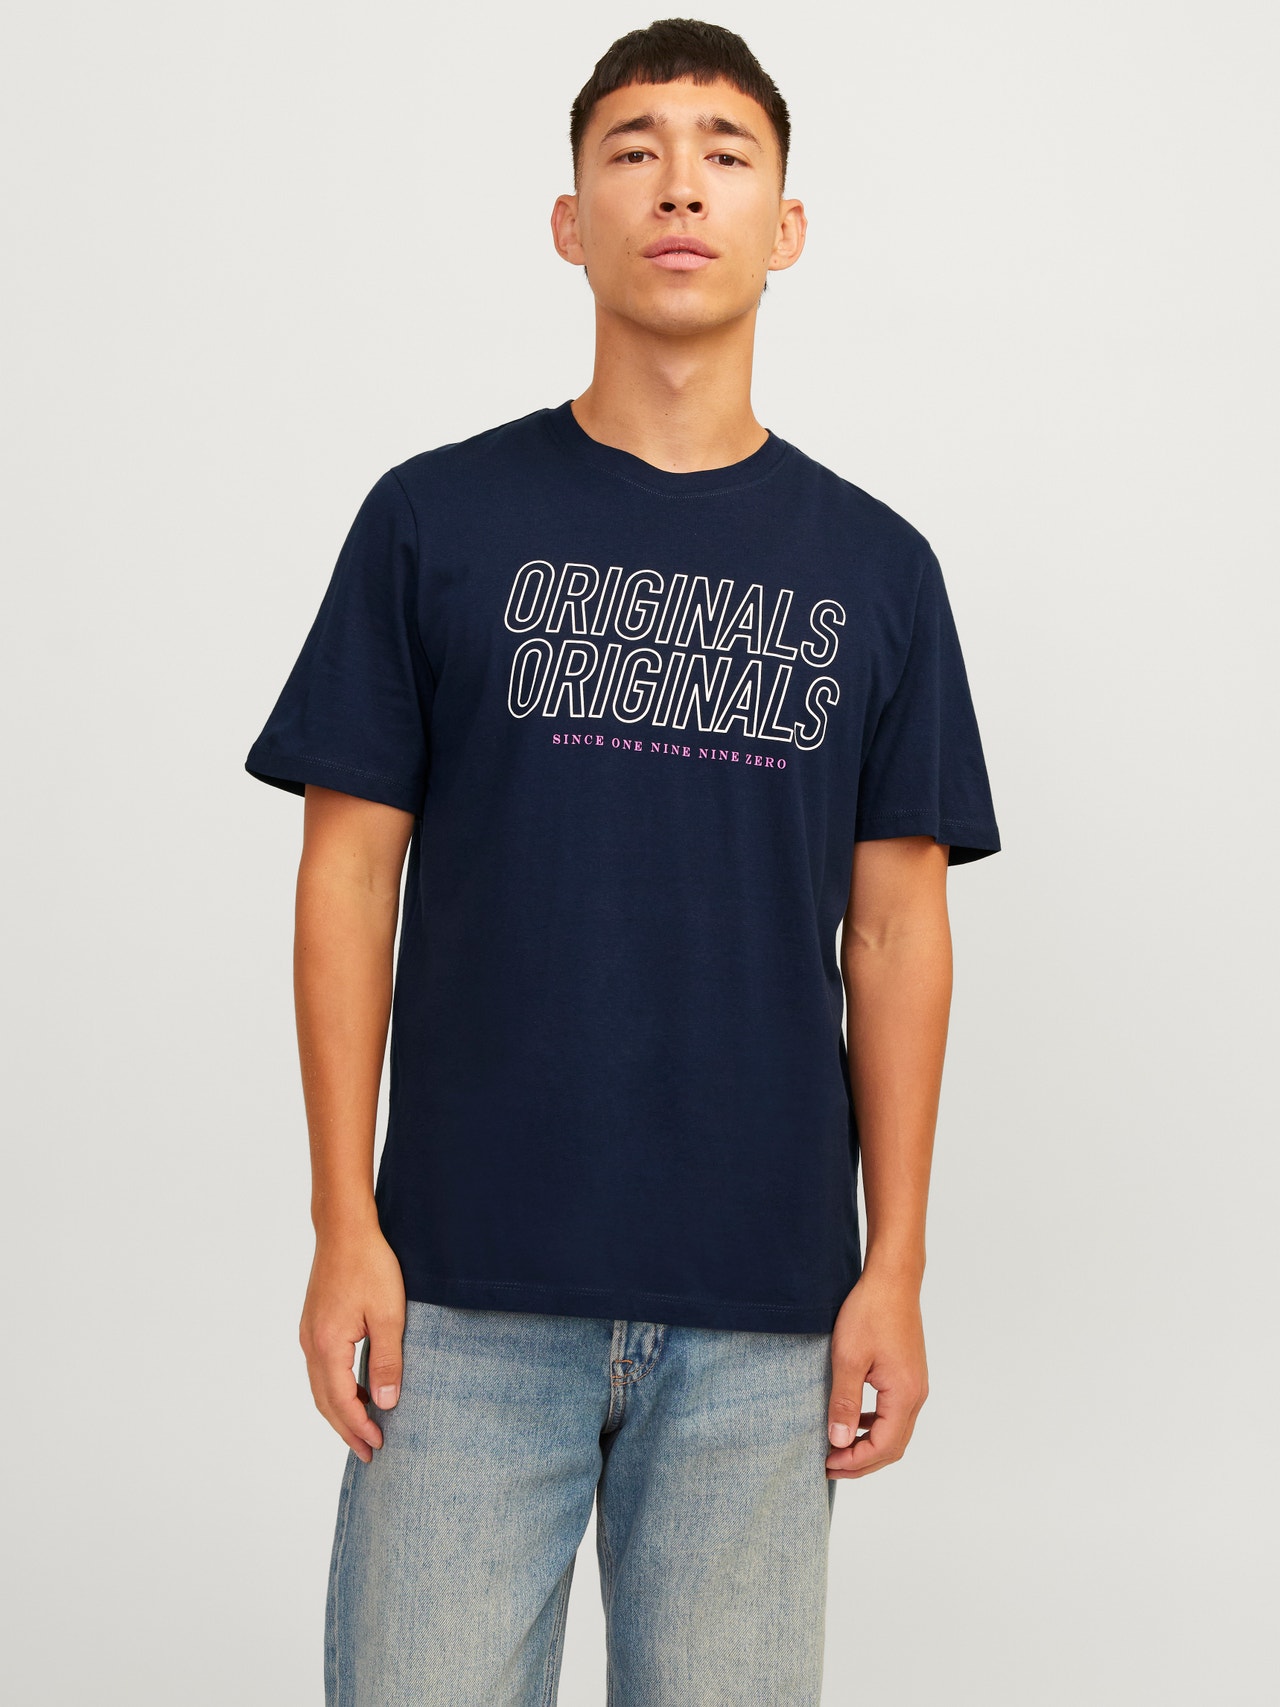 Jack & Jones Nadruk Okrągły dekolt T-shirt -Navy Blazer - 12255078